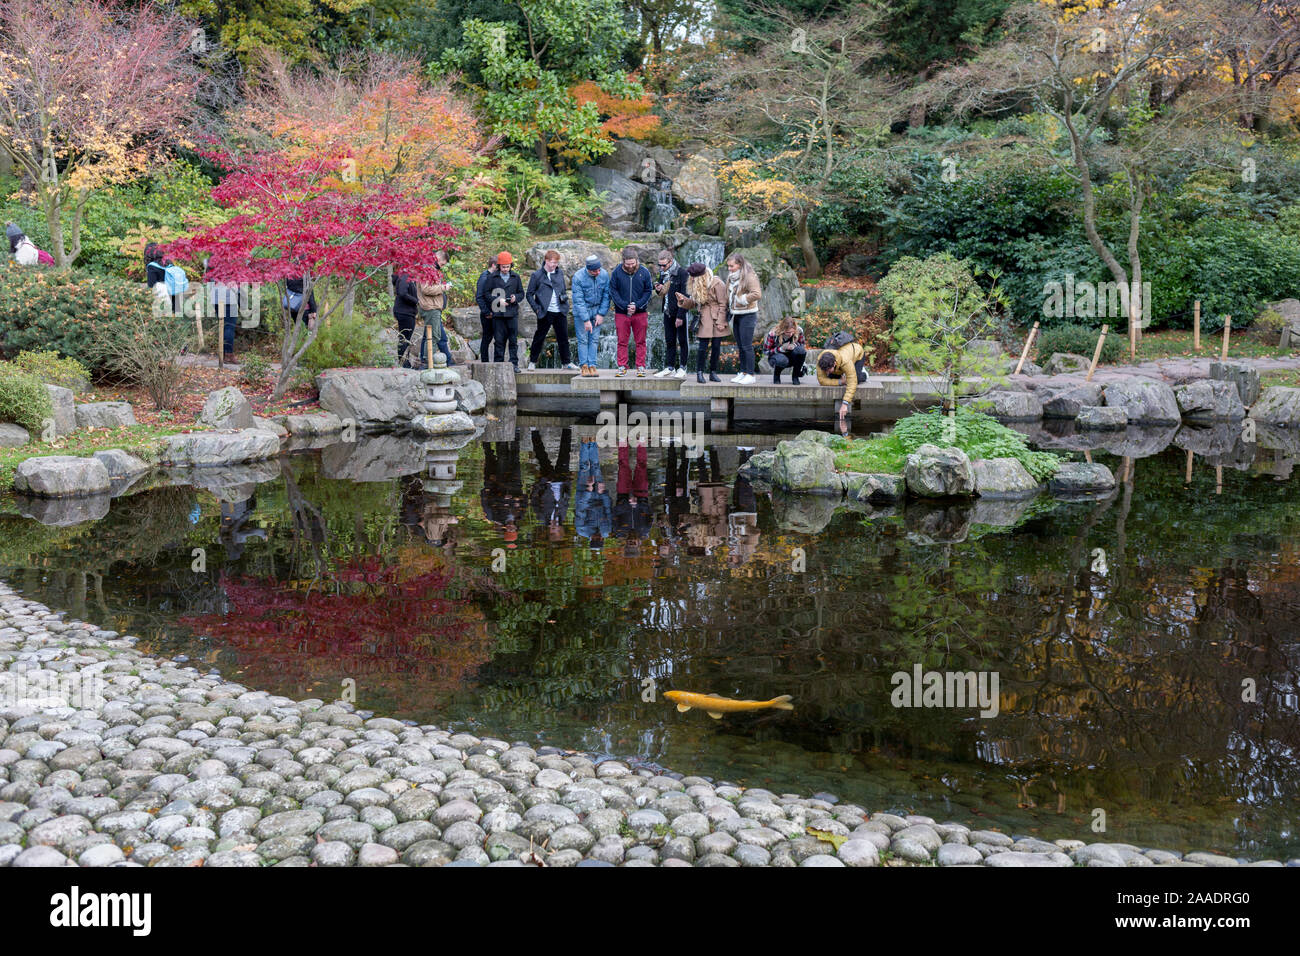 Les visiteurs du Jardin de Kyoto regarder dans l'eau pour voir les carpes koï en Hollande' Parcs Jardin de Kyoto, le 17 novembre 2019, à Londres, en Angleterre. Le Jardin de Kyoto a été ouverte en 1991. C'était un cadeau de la ville de Kyoto pour commémorer la longue amitié entre le Japon et la Grande-Bretagne. Aujourd'hui, le Jardin de Kyoto est une partie populaire de Holland Park - mais ce n'est pas le seul jardin japonais dans cet espace vert. En juillet 2012, le Jardin du souvenir de Fukushima a été officiellement ouverte. Il commémore la gratitude du peuple japonais au peuple britannique pour leur soutien après les catastrophes naturelles qui st Banque D'Images